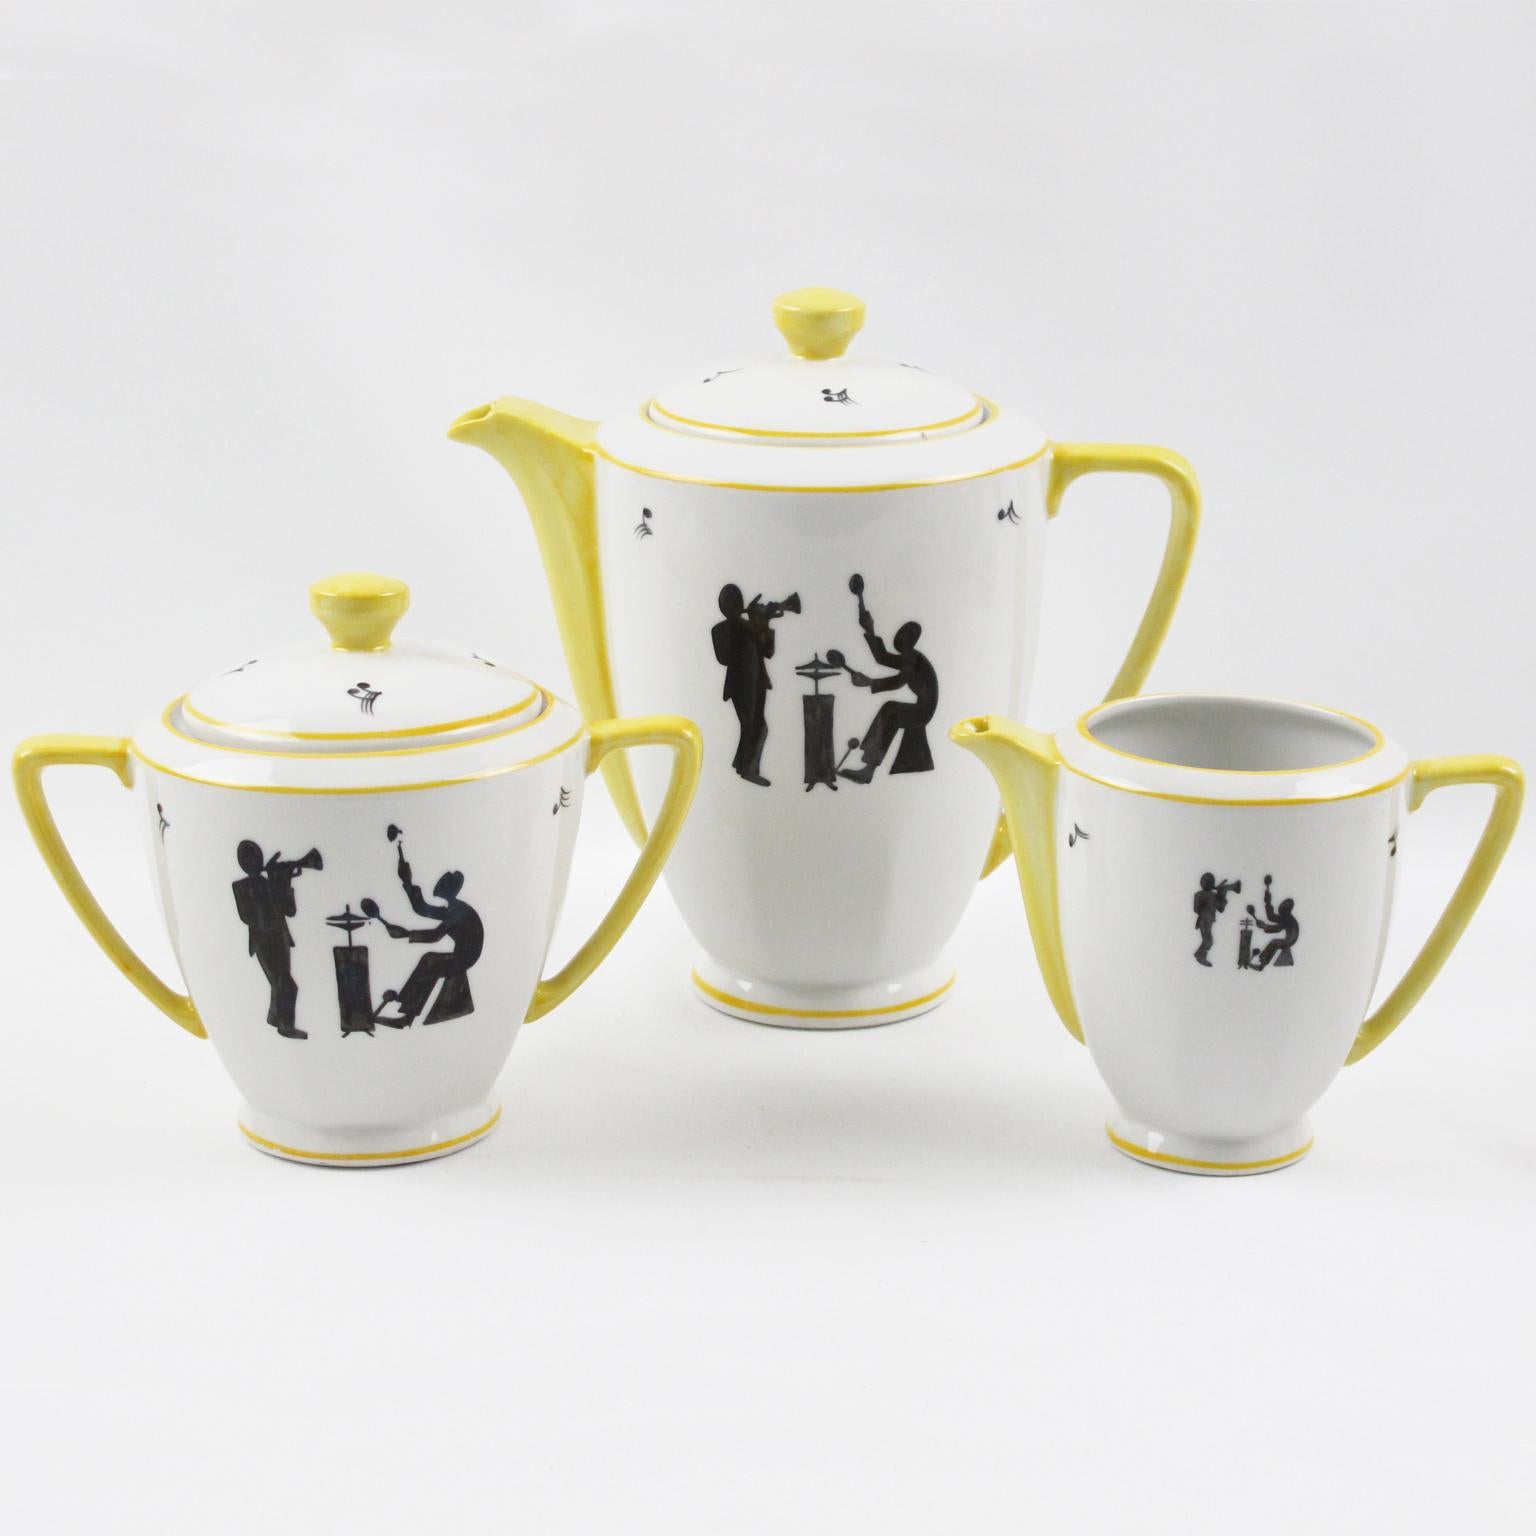 Mid-Century Modern Limoges France Porcelain Tea Coffee Set Jazz Band Design, 1960s